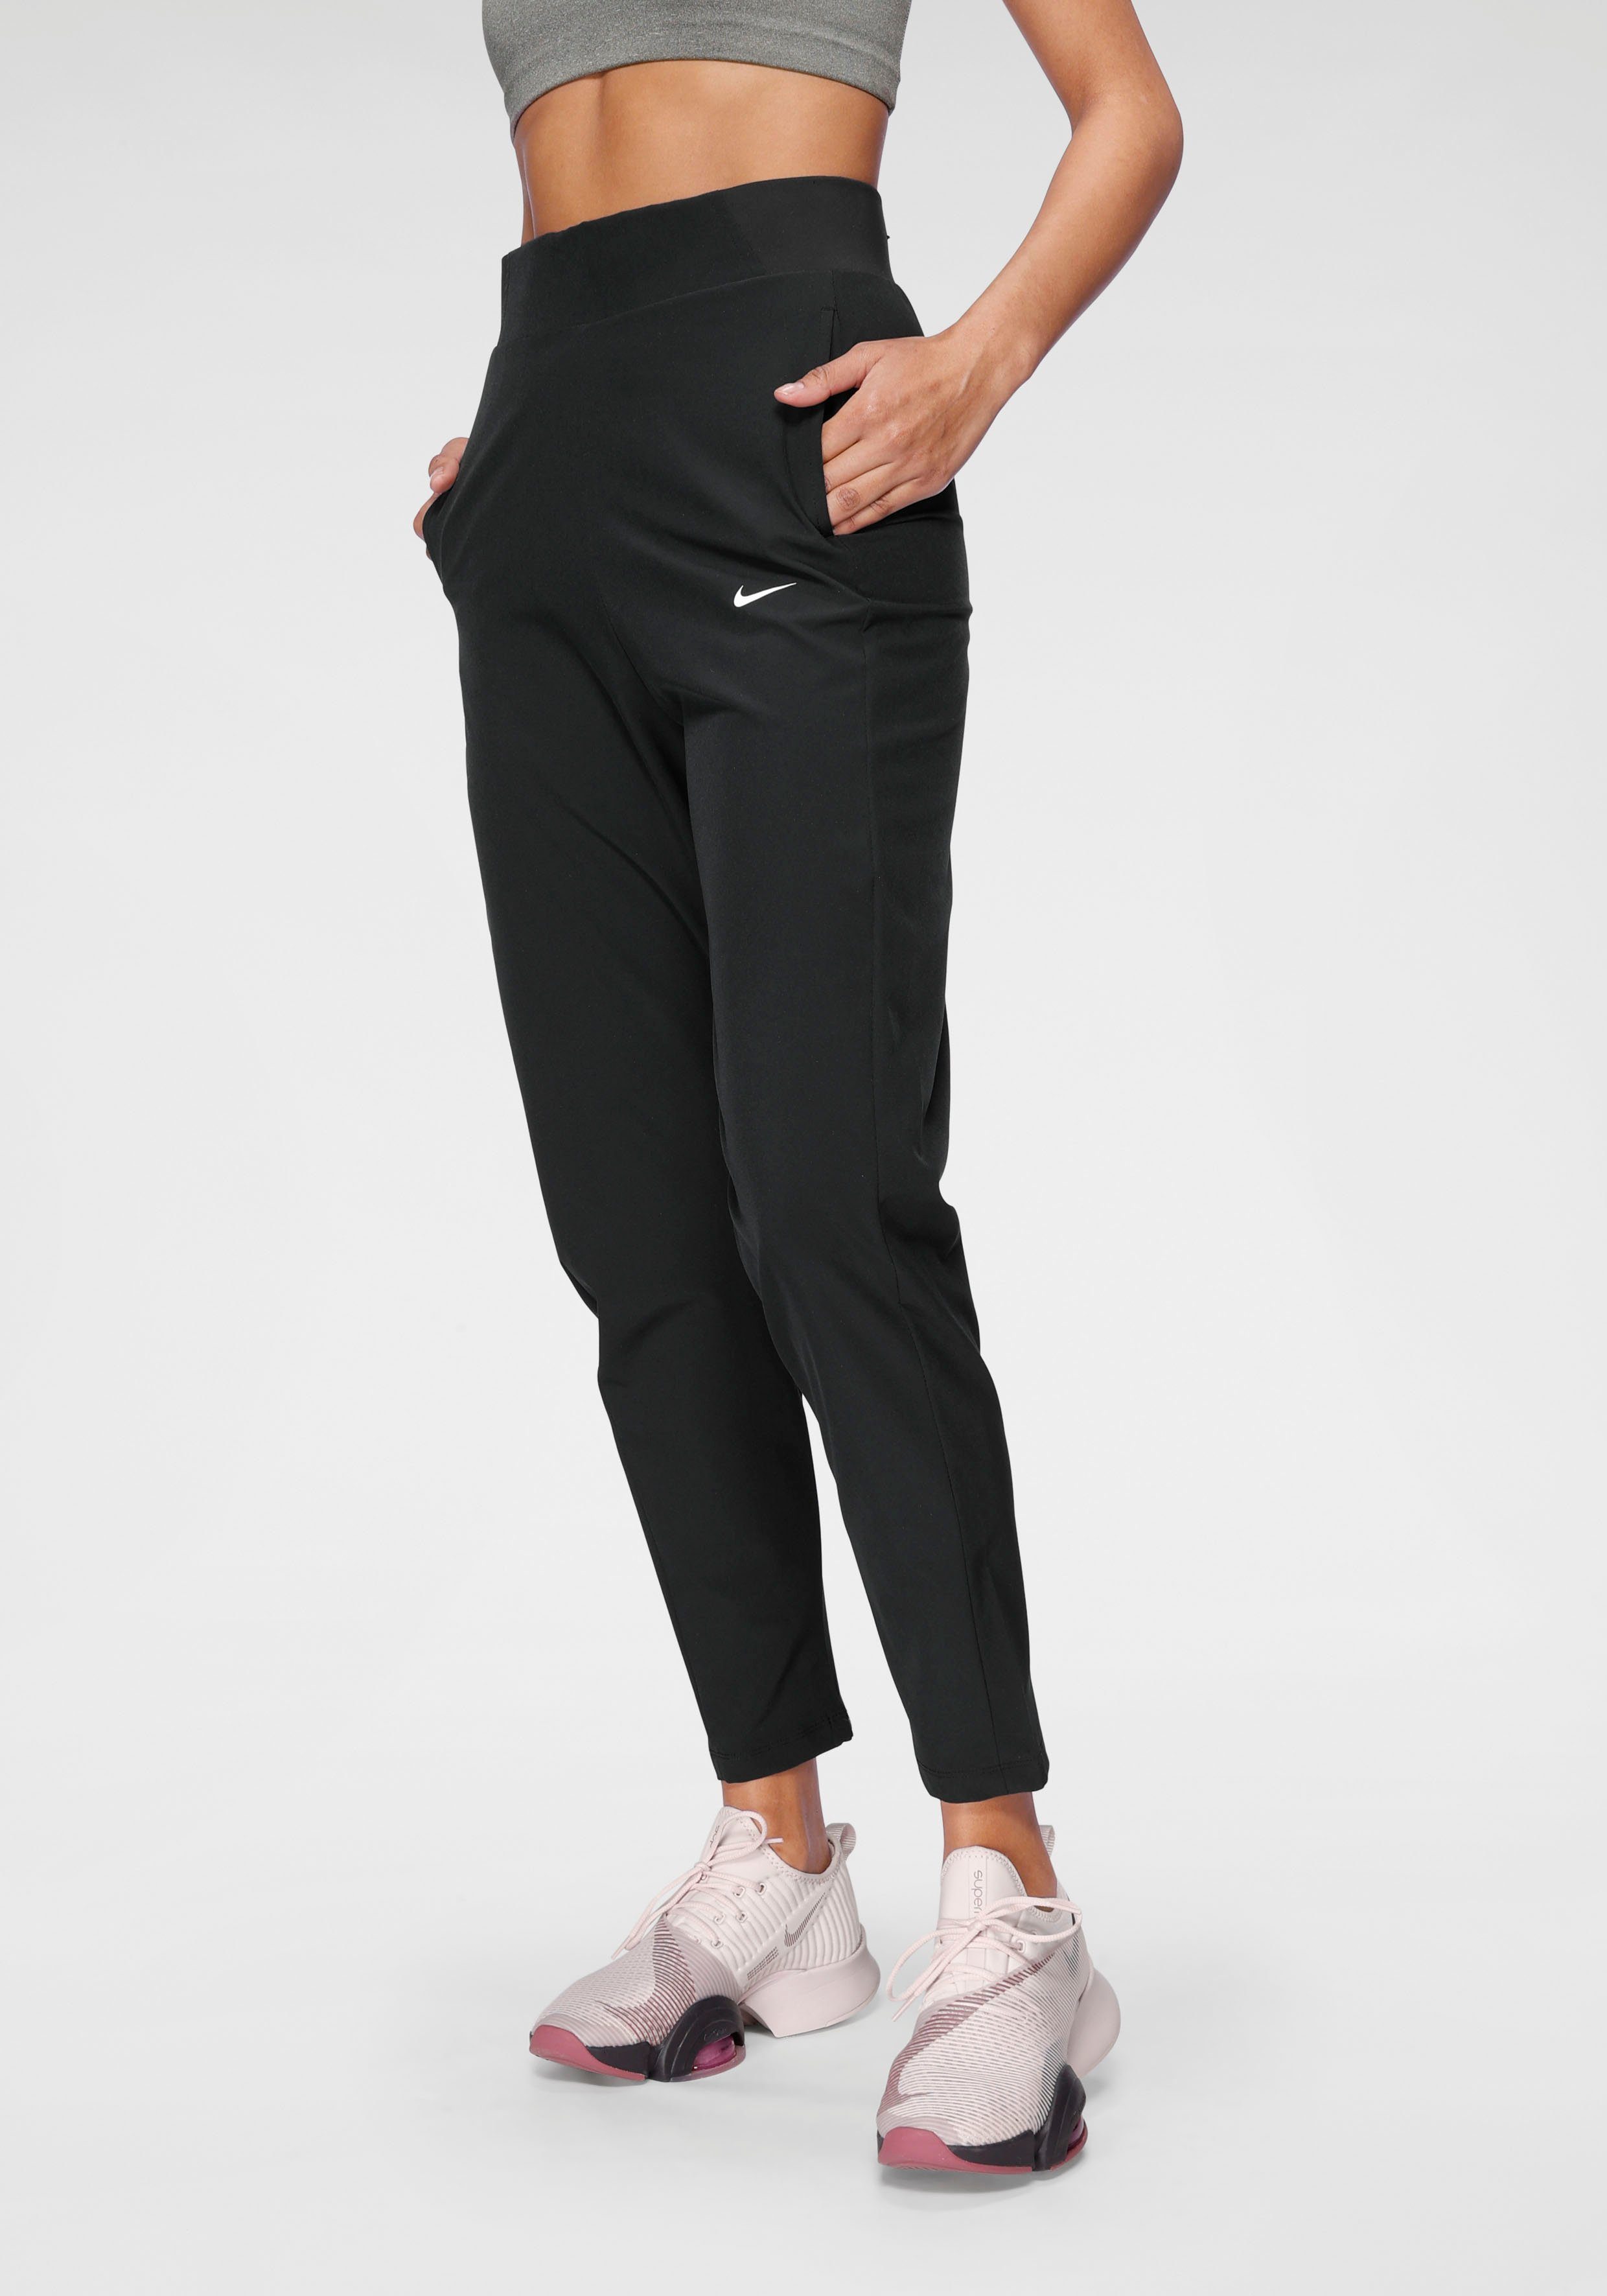 Nike Damenmode online kaufen » Damen-Bekleidung | OTTO